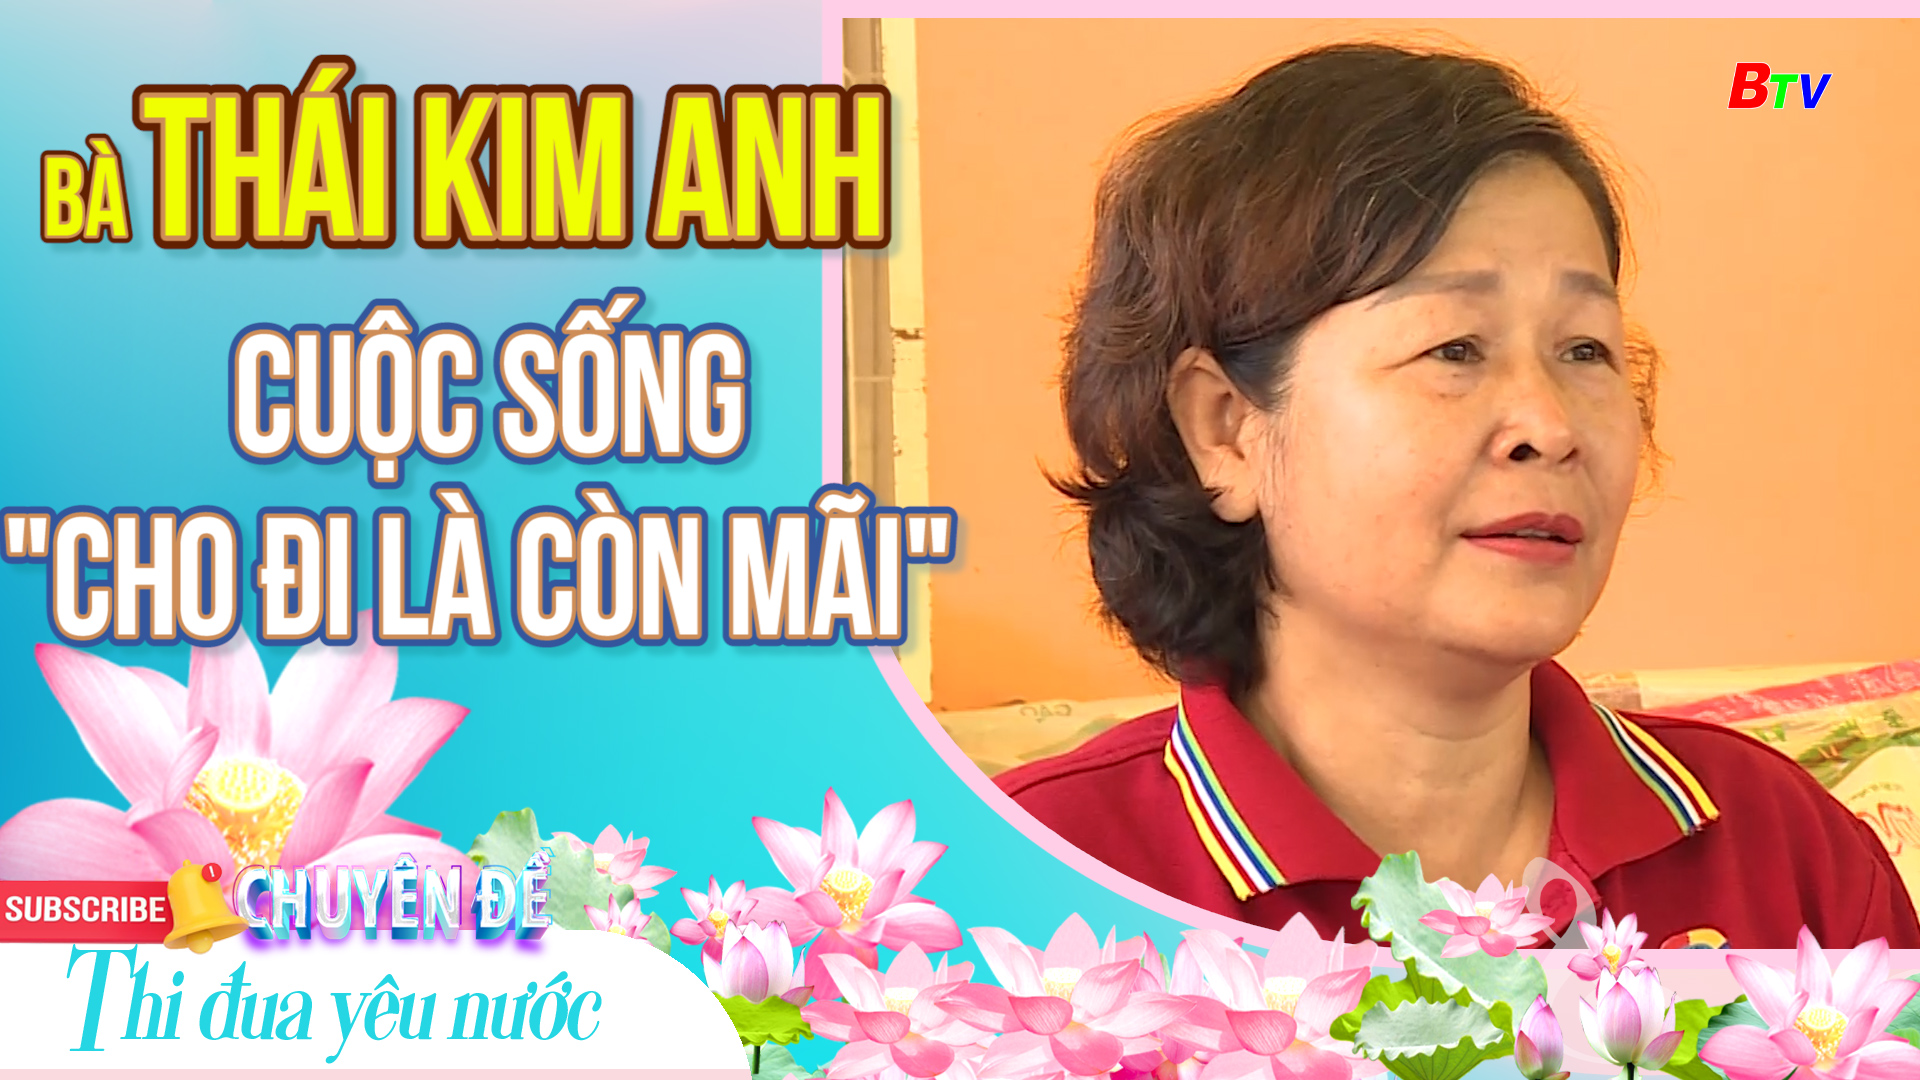 Bà Thái Kim Anh - Cuộc sống 